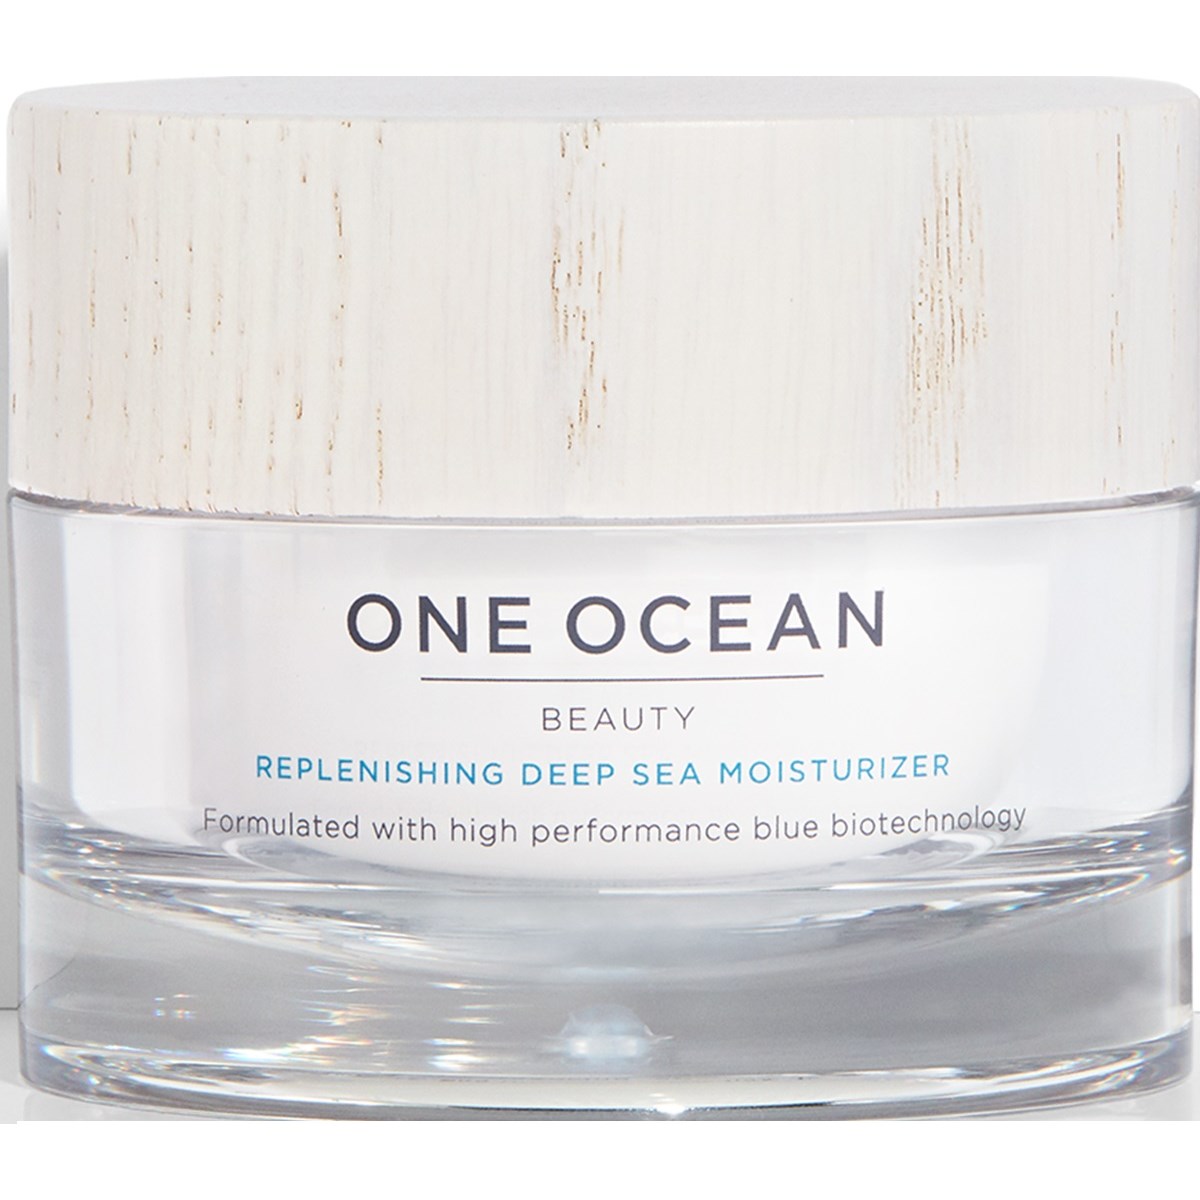 One Ocean Beauty Replenishing Deep Sea Moisturizer 50 ml